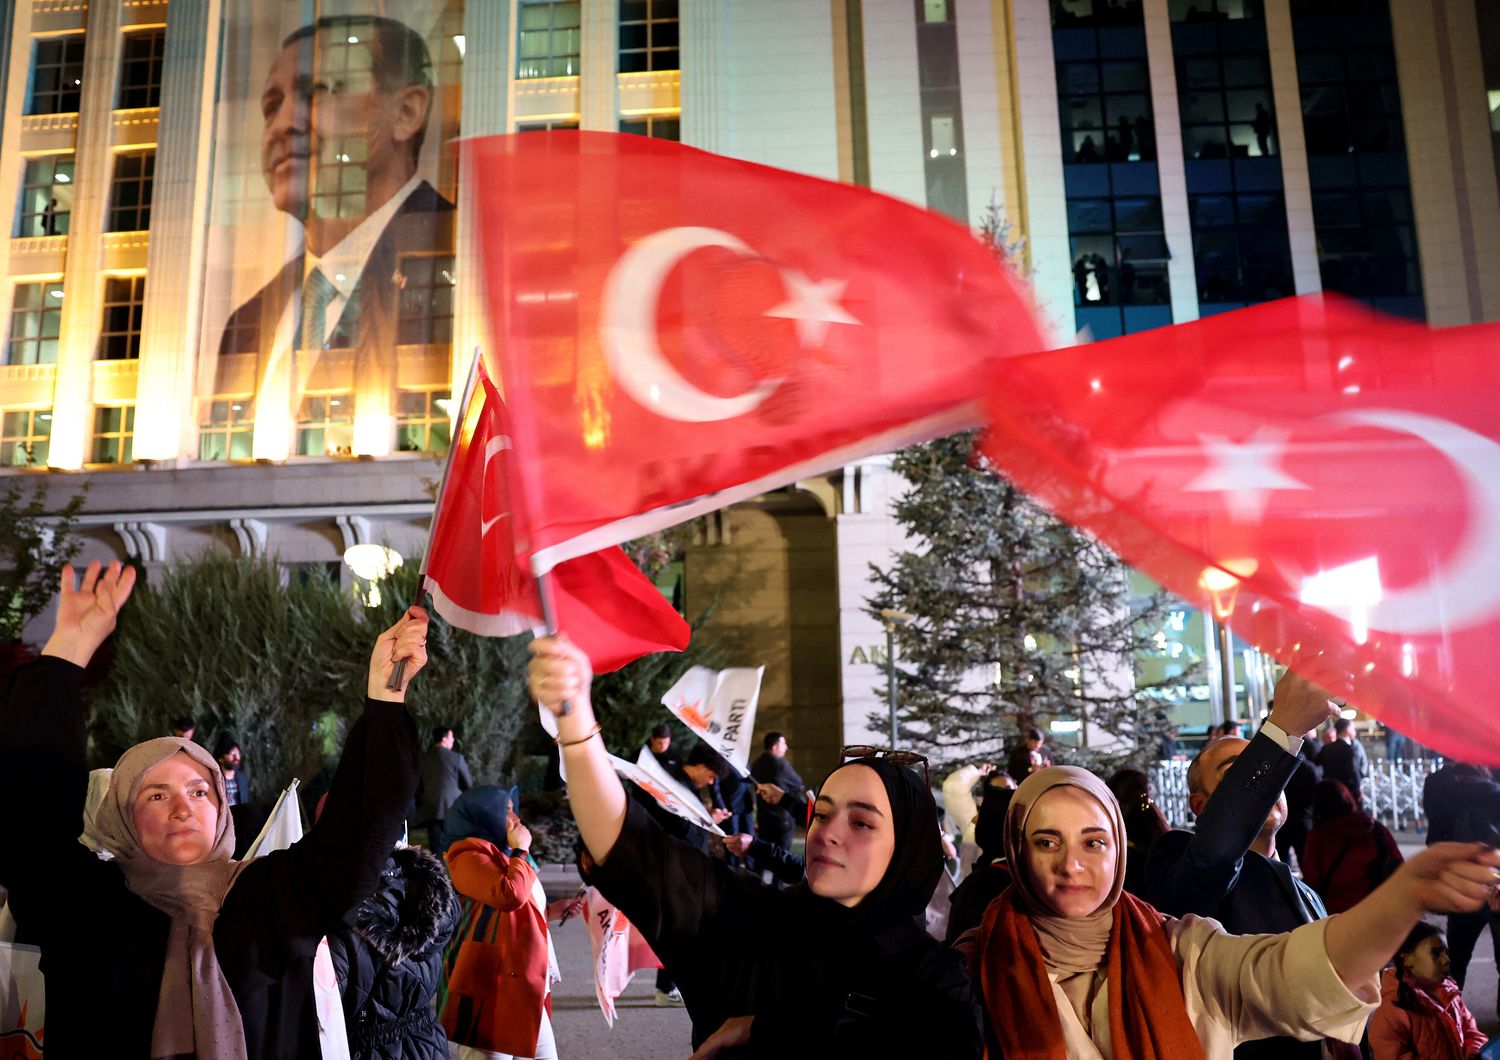 Sostenitori di Erdogan davanti al quartier generale dell'AKP ad Ankara